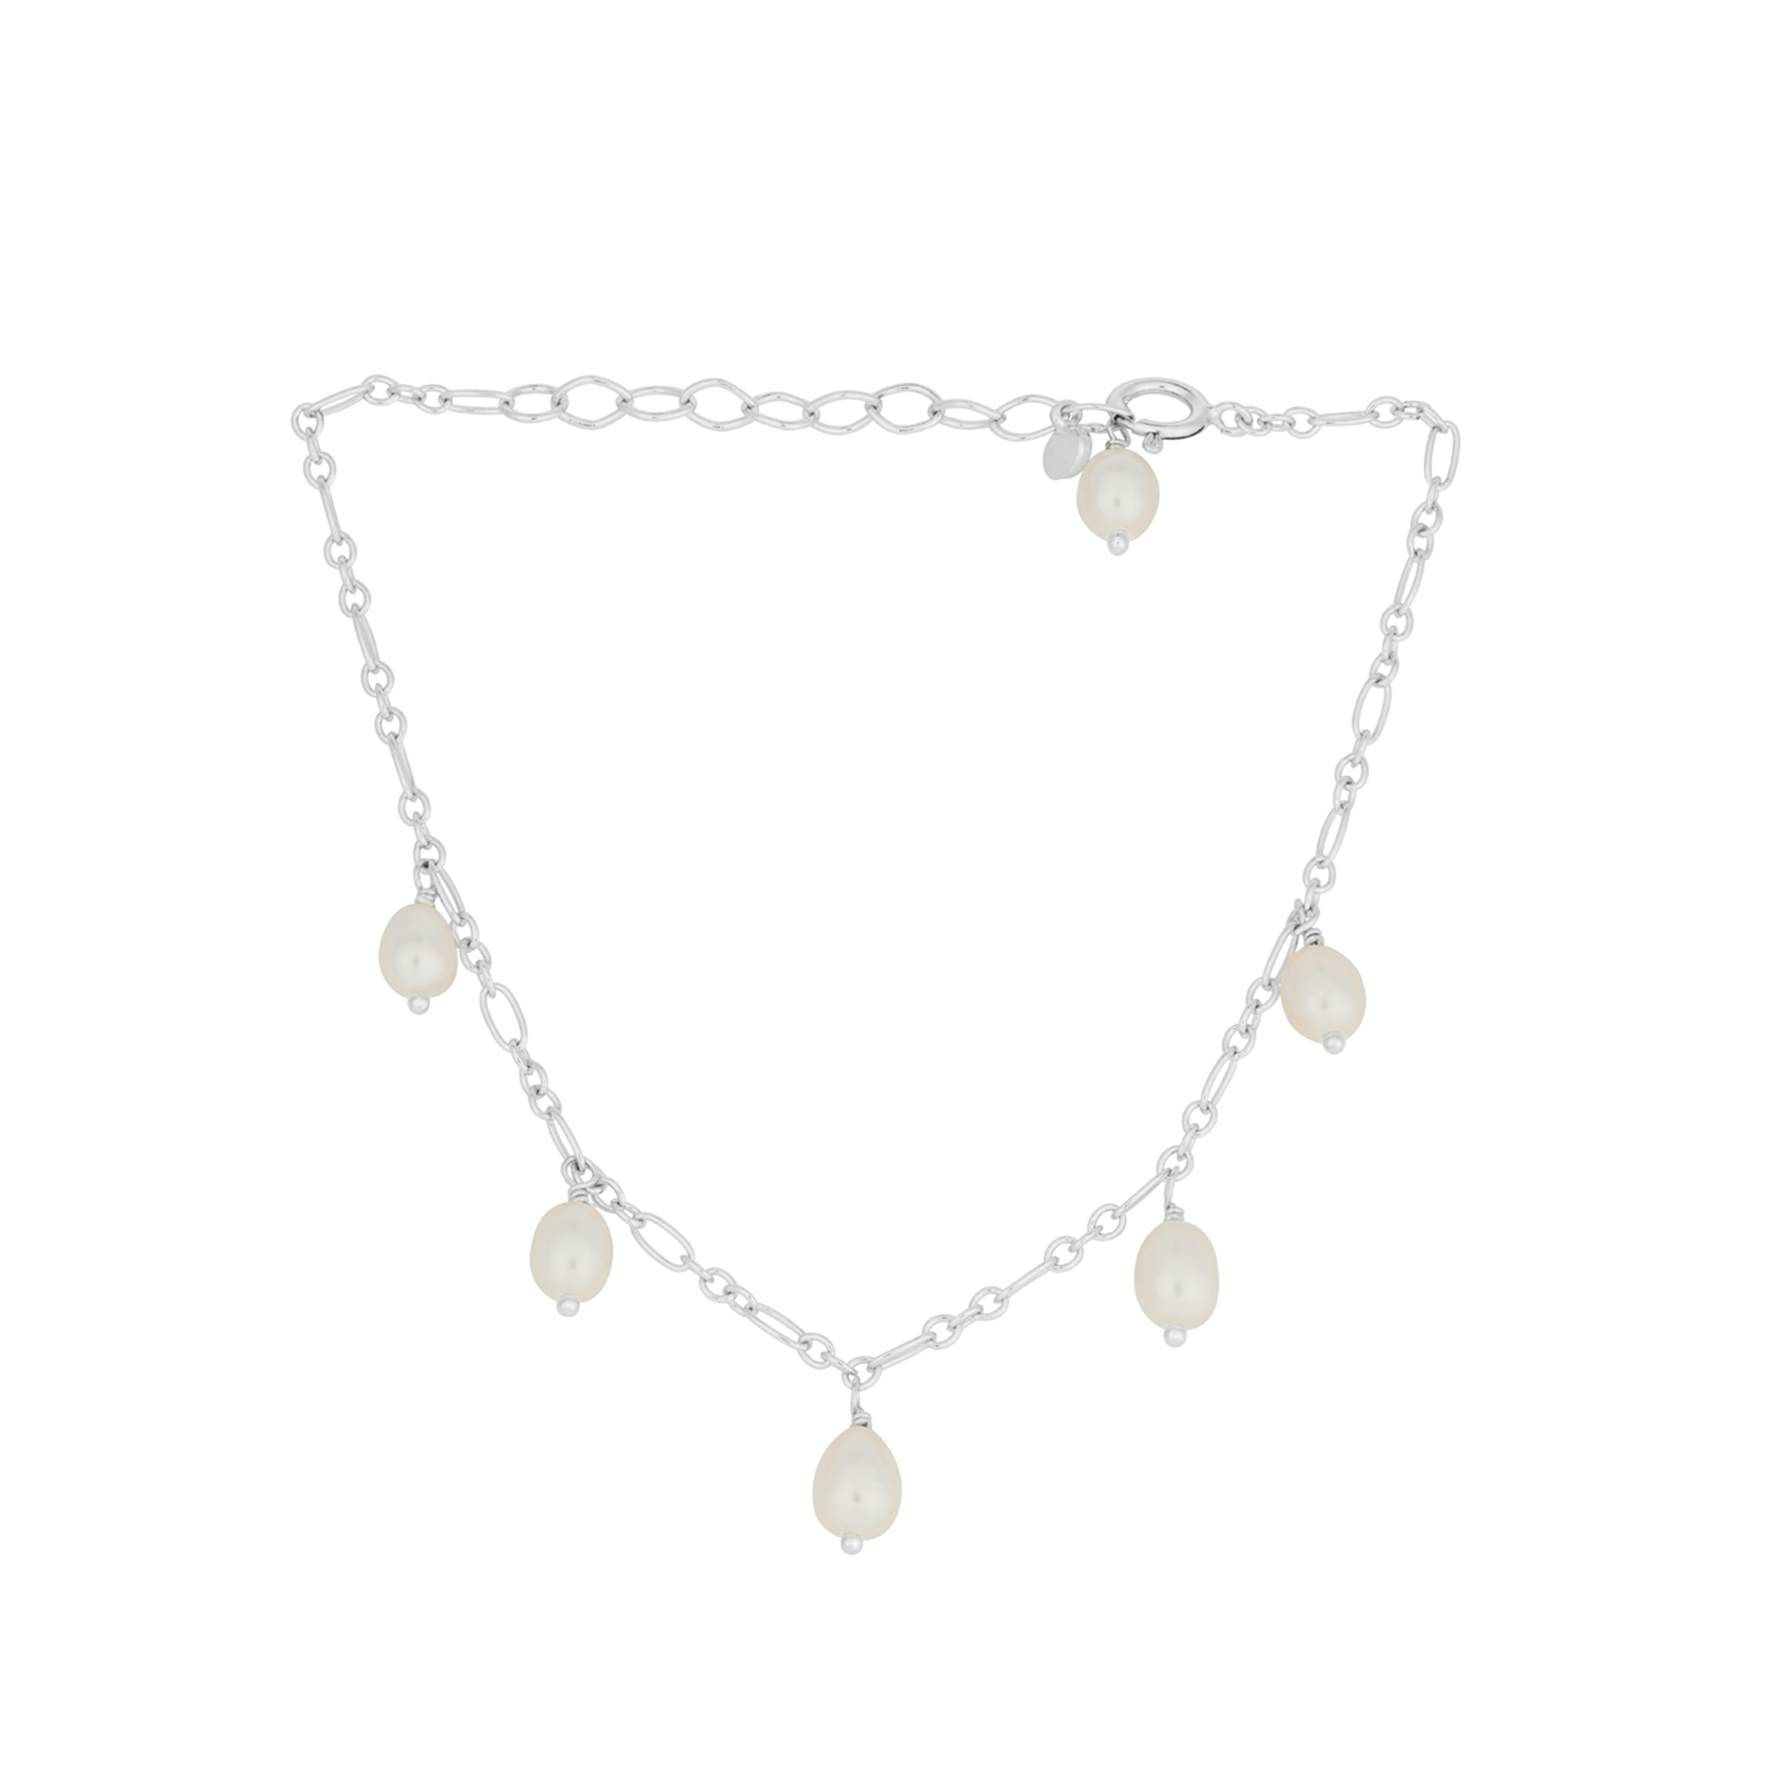 Ocean Dream Bracelet from Pernille Corydon in Silver Sterling 925|Freshwater Pearl